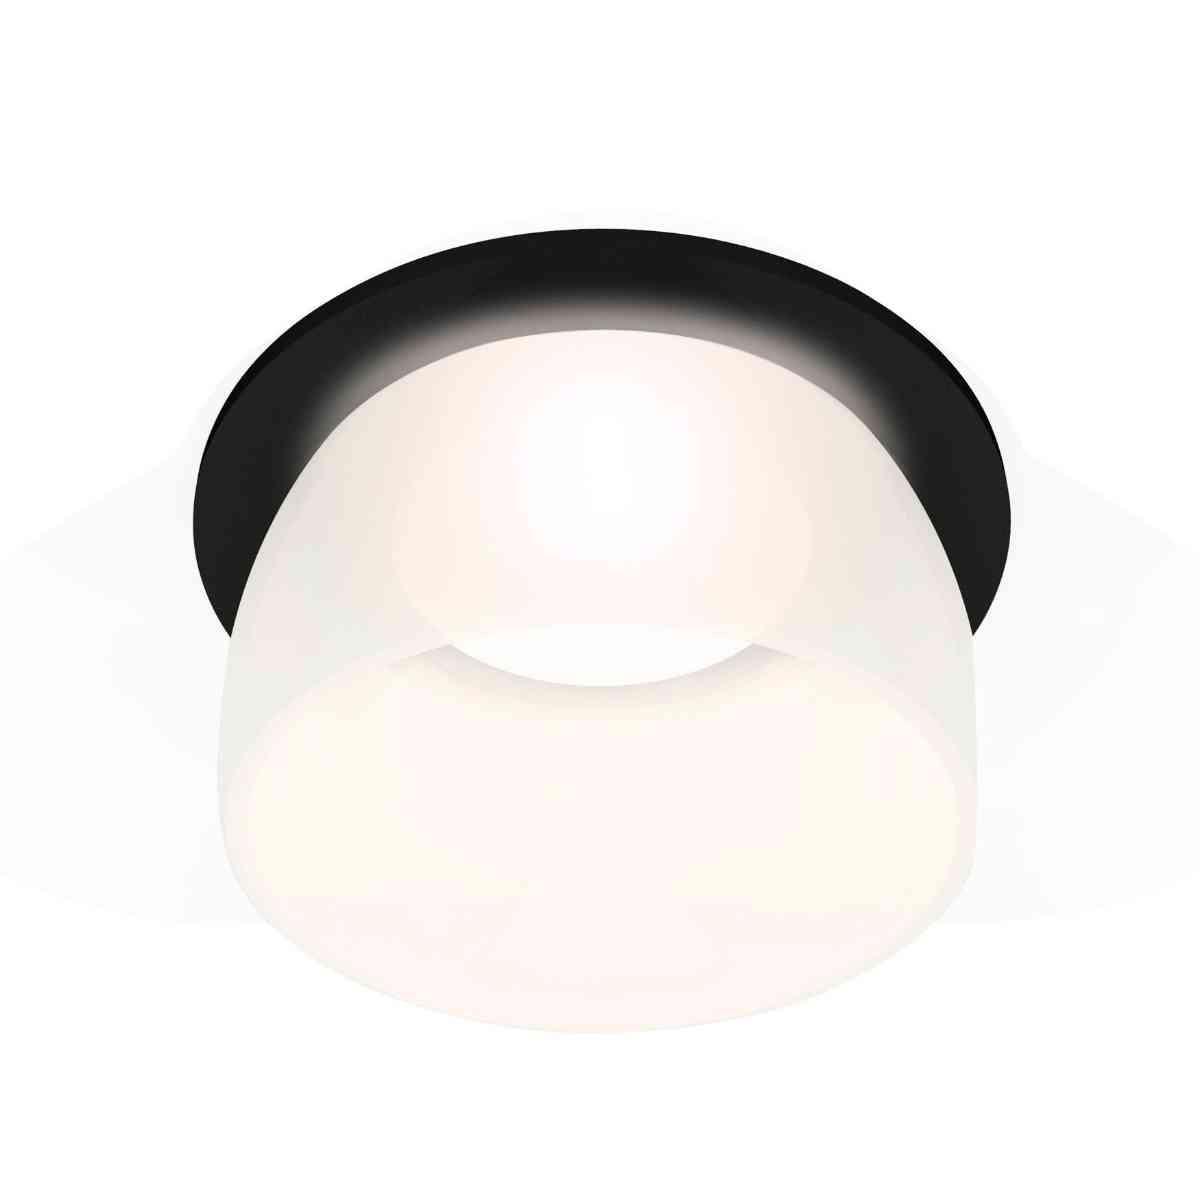 фото комплект встраиваемого светильника ambrella light techno spot xc7622047 sbk/fr черный песок/белый матовый (c7622, n7177) | 220svet.ru